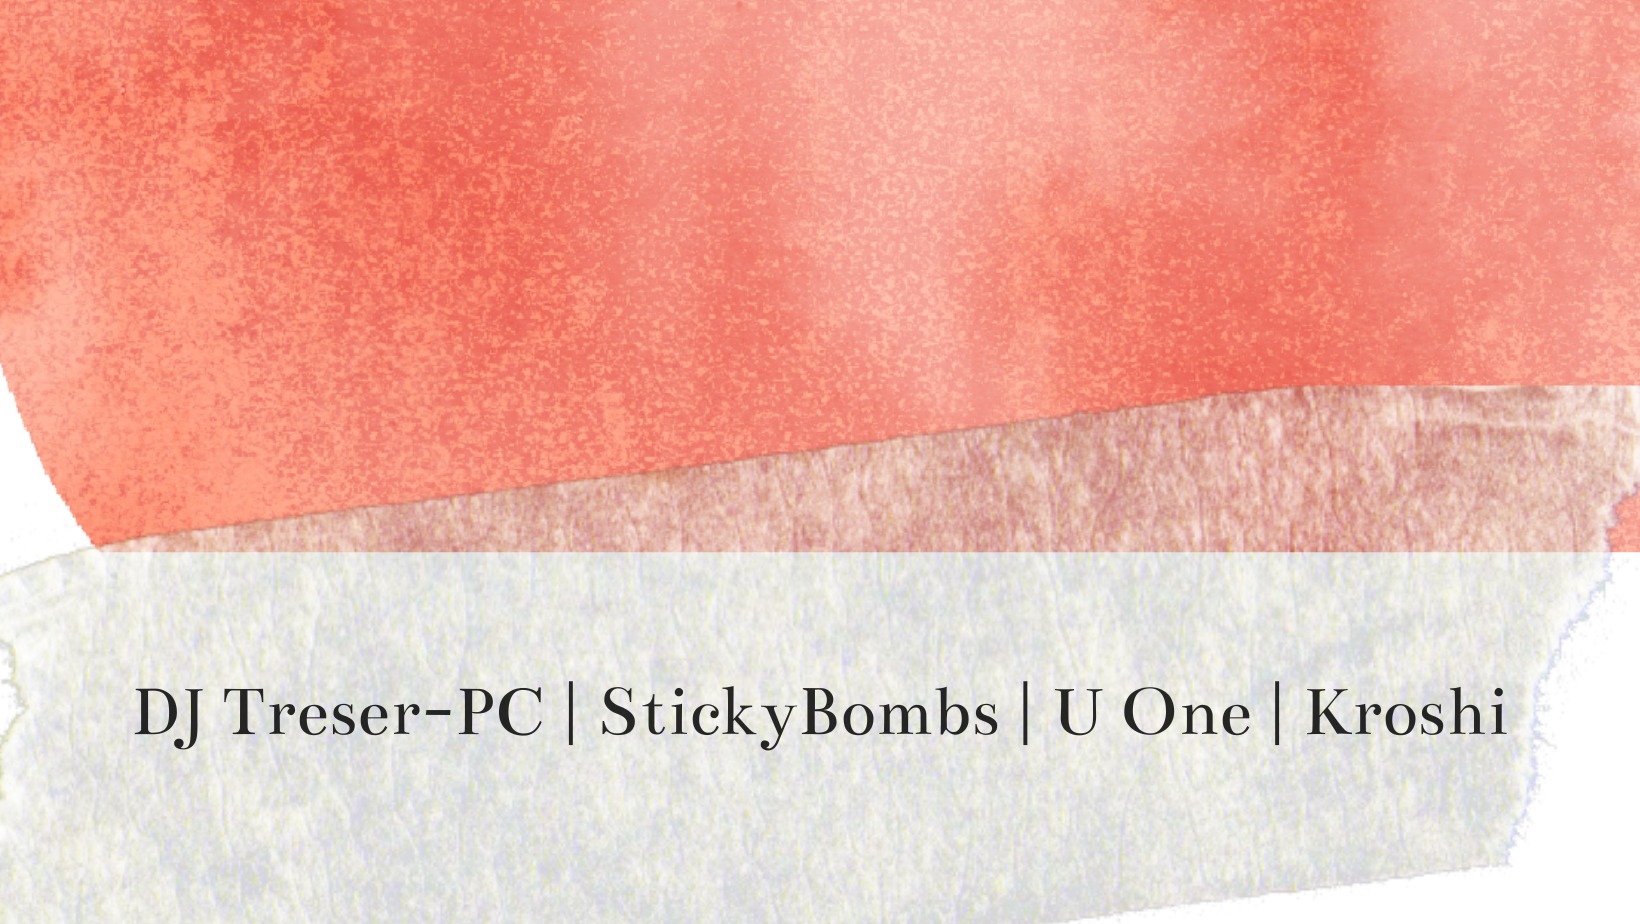 DJ Treser-PC | StickyBombs | U One | Kroshi